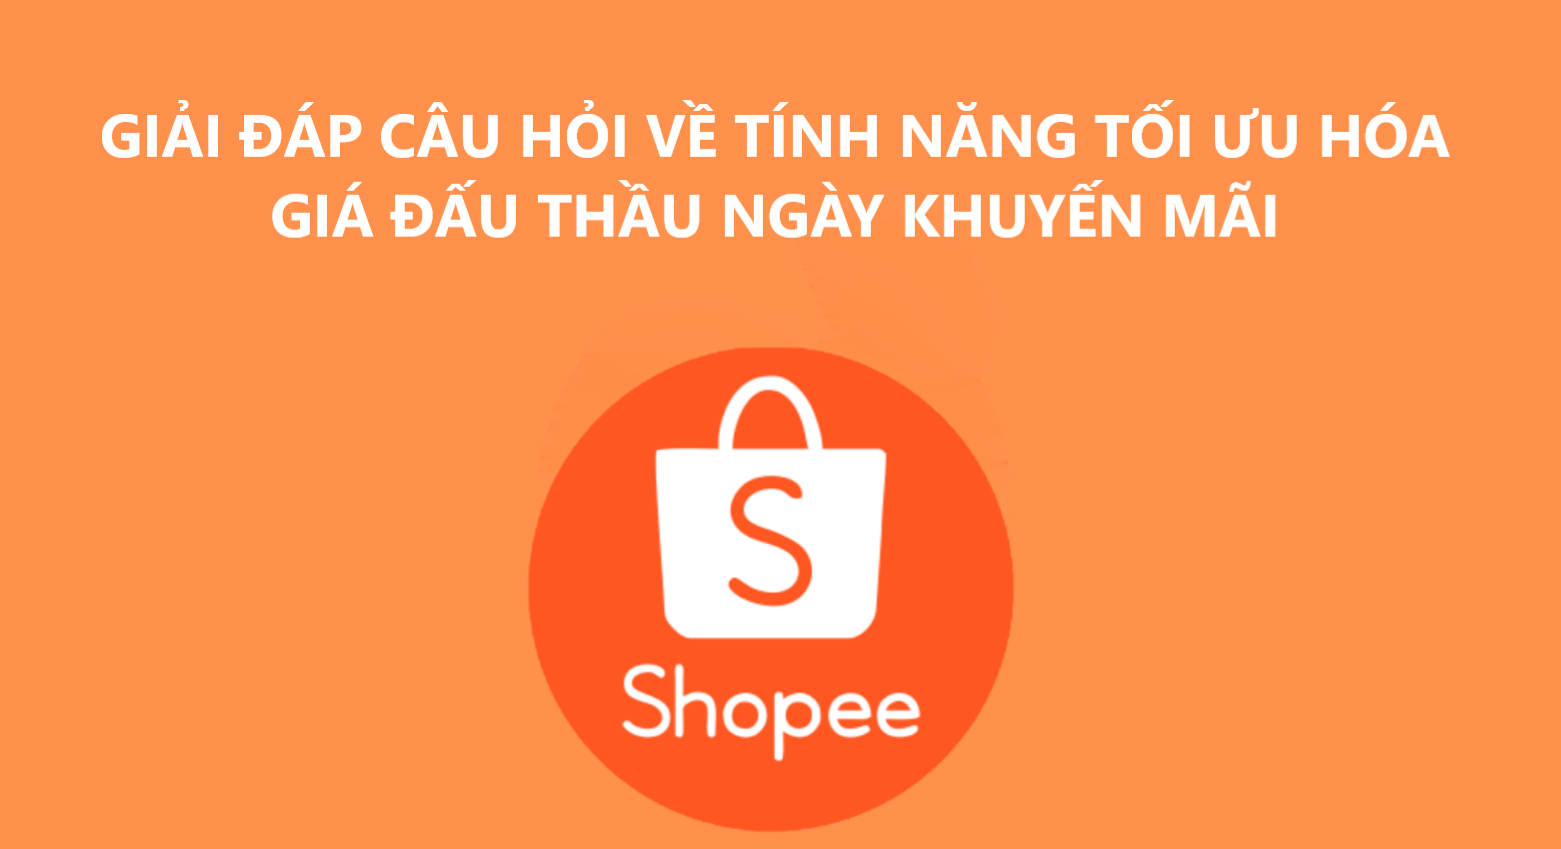 Tìm hiểu về tính năng tối ưu hóa giá đấu thầu ngày khuyến mãi trên Shopee